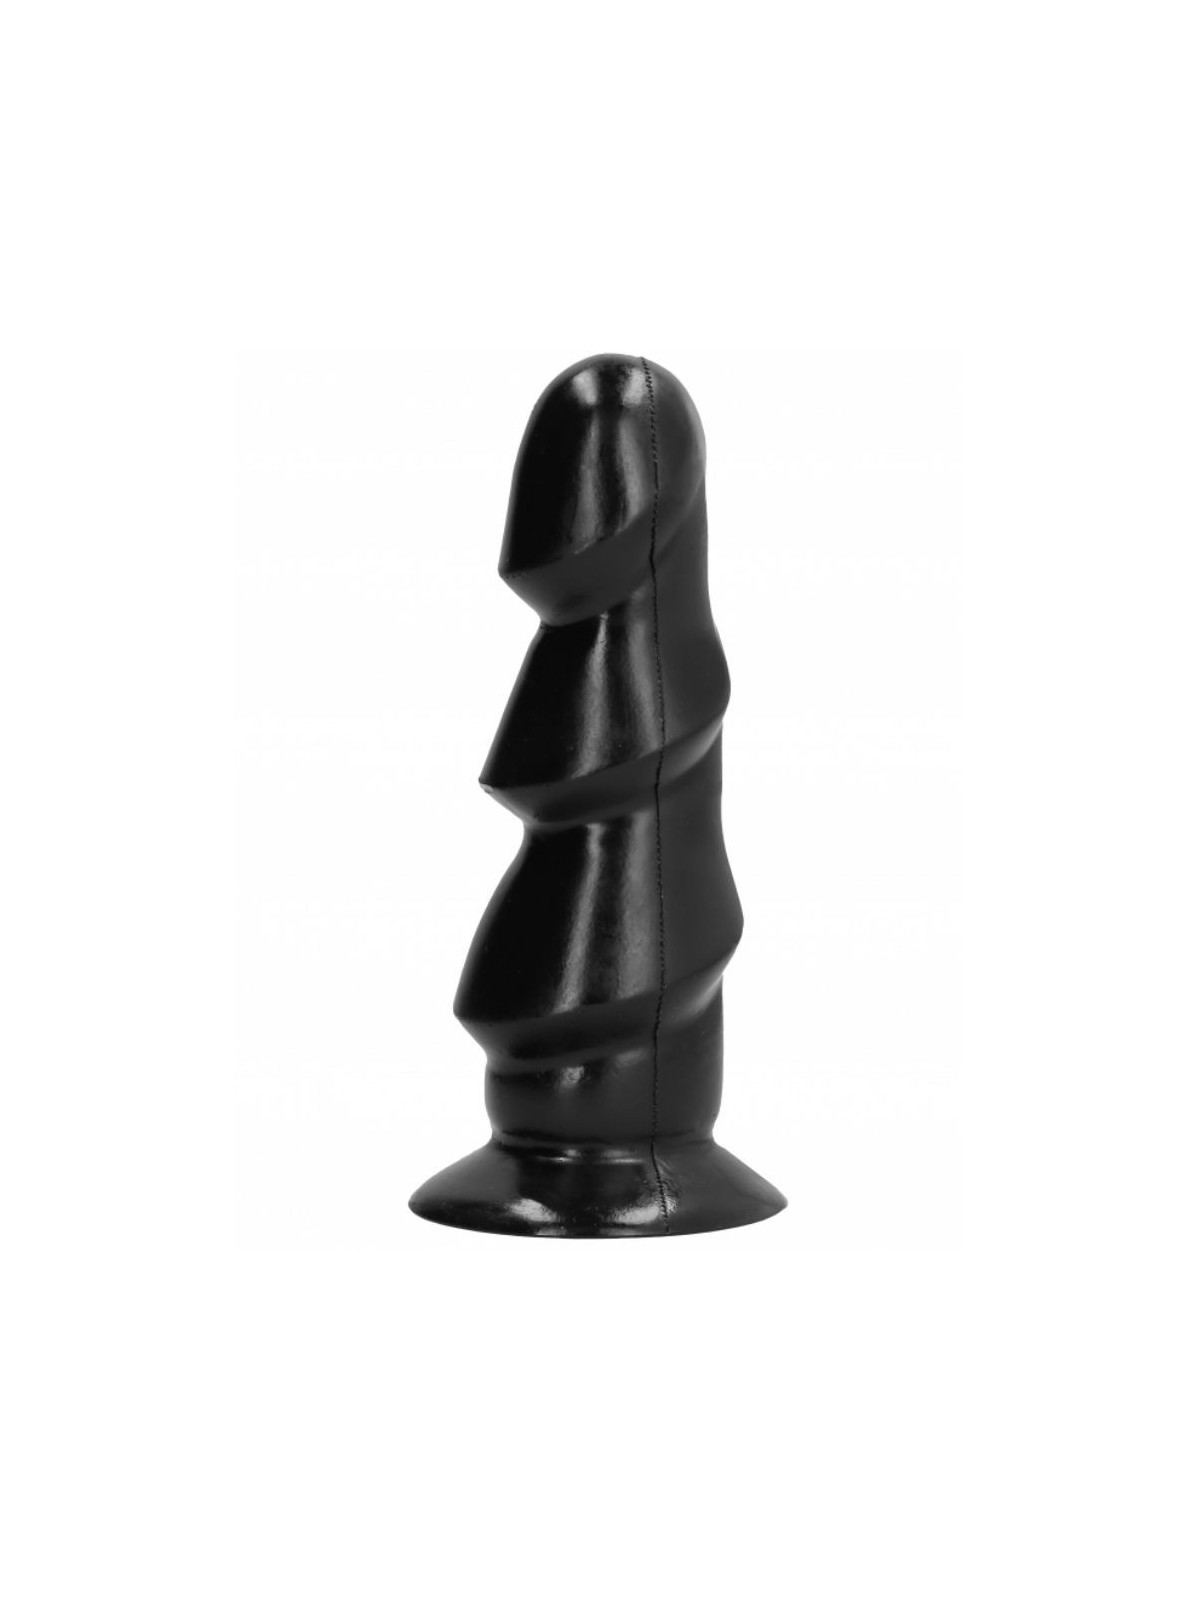 All Black Dildo 17 cm - Comprar Dildo realista All Black - Dildos sin vibración (1)